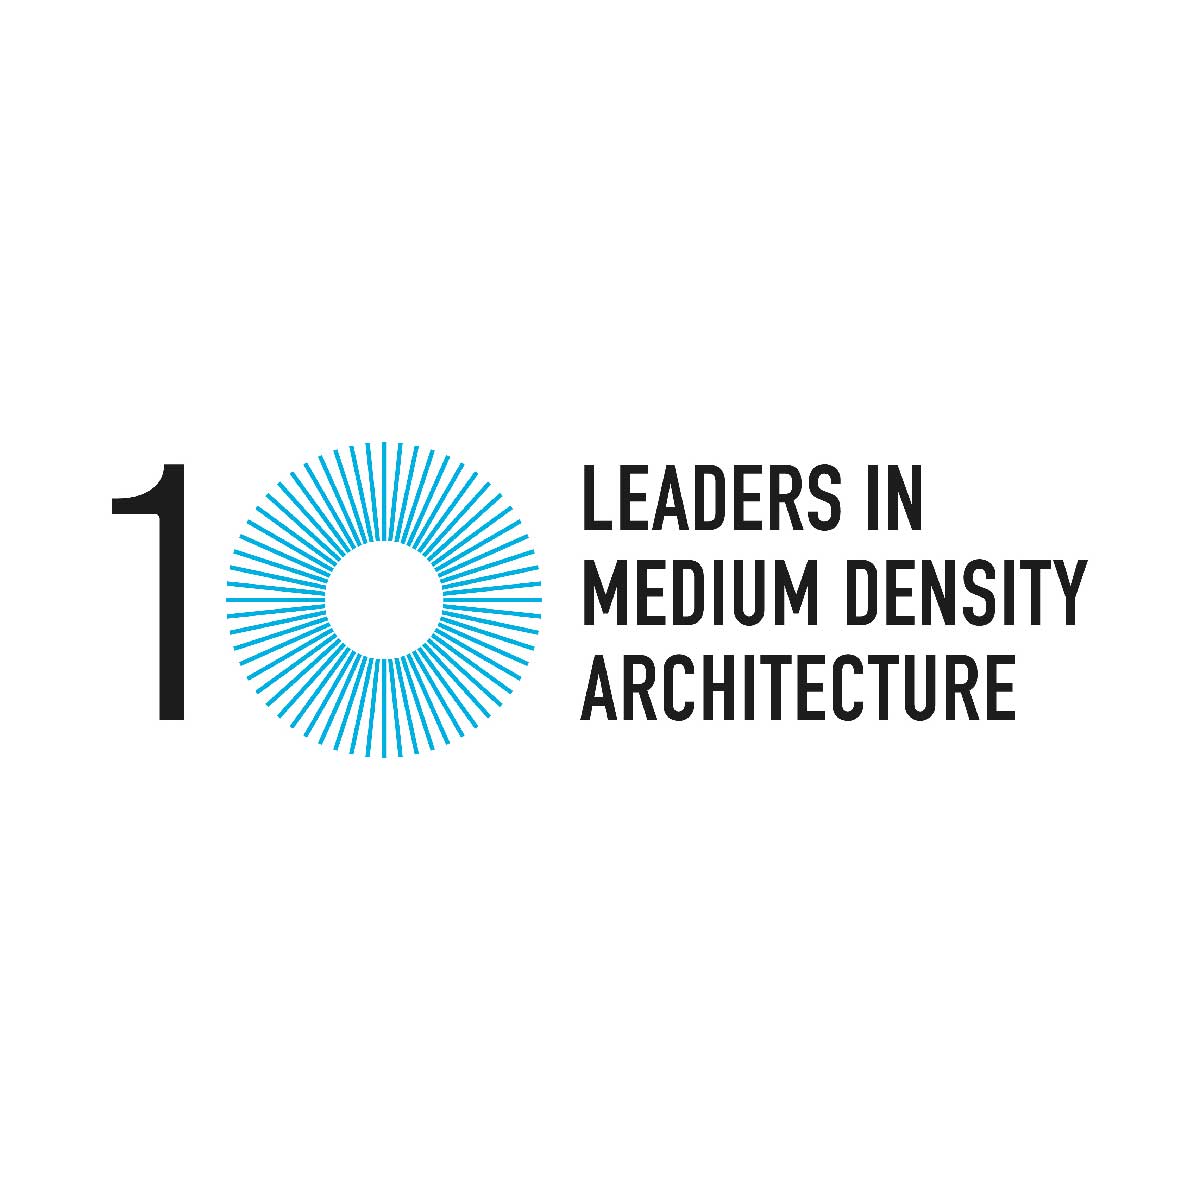 Leaders in Medium Density Architecture